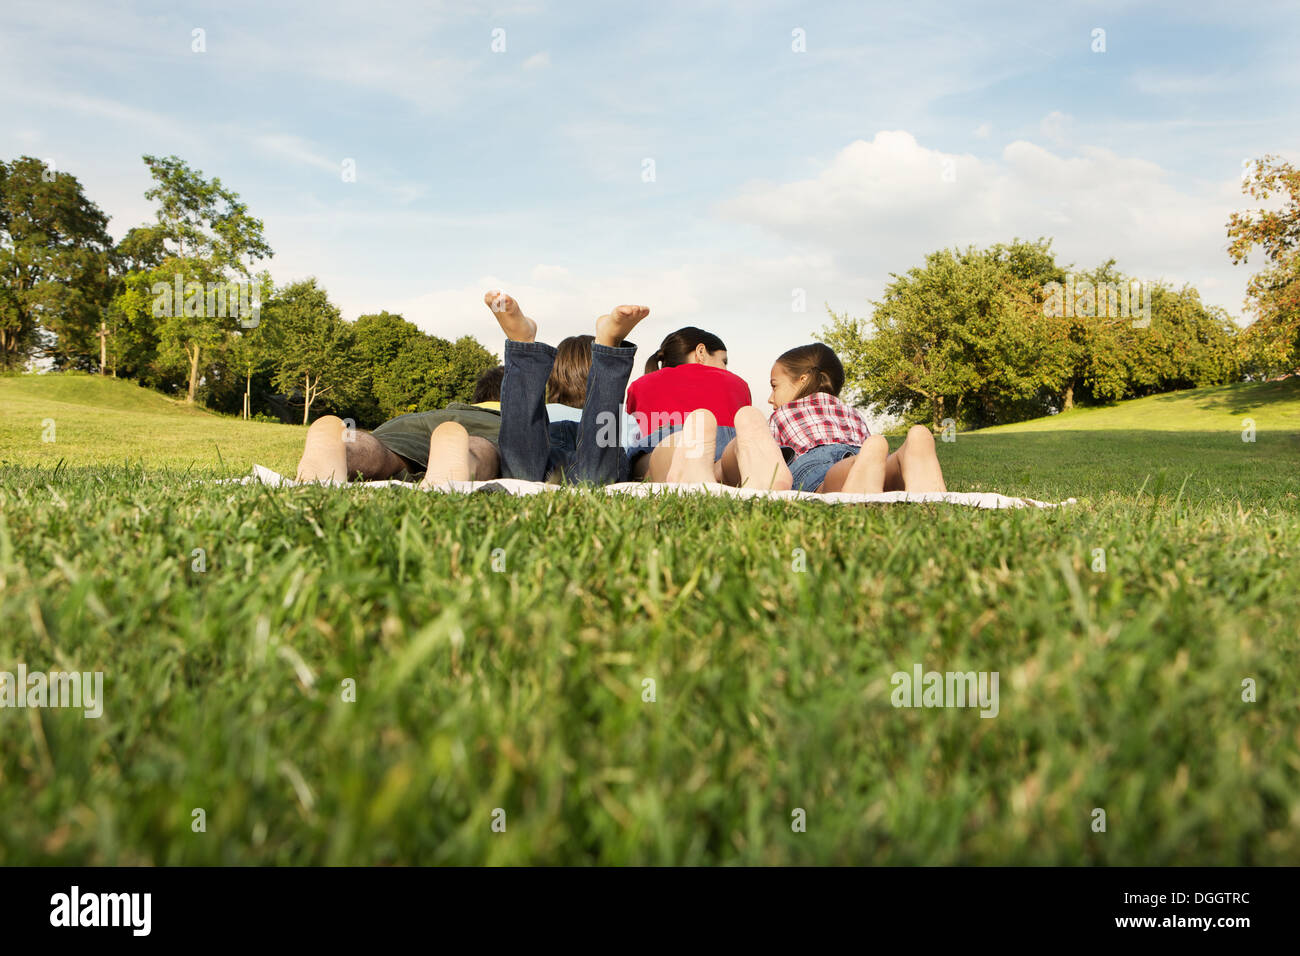 Famille avec deux enfants allongés sur l'herbe, vue arrière Banque D'Images